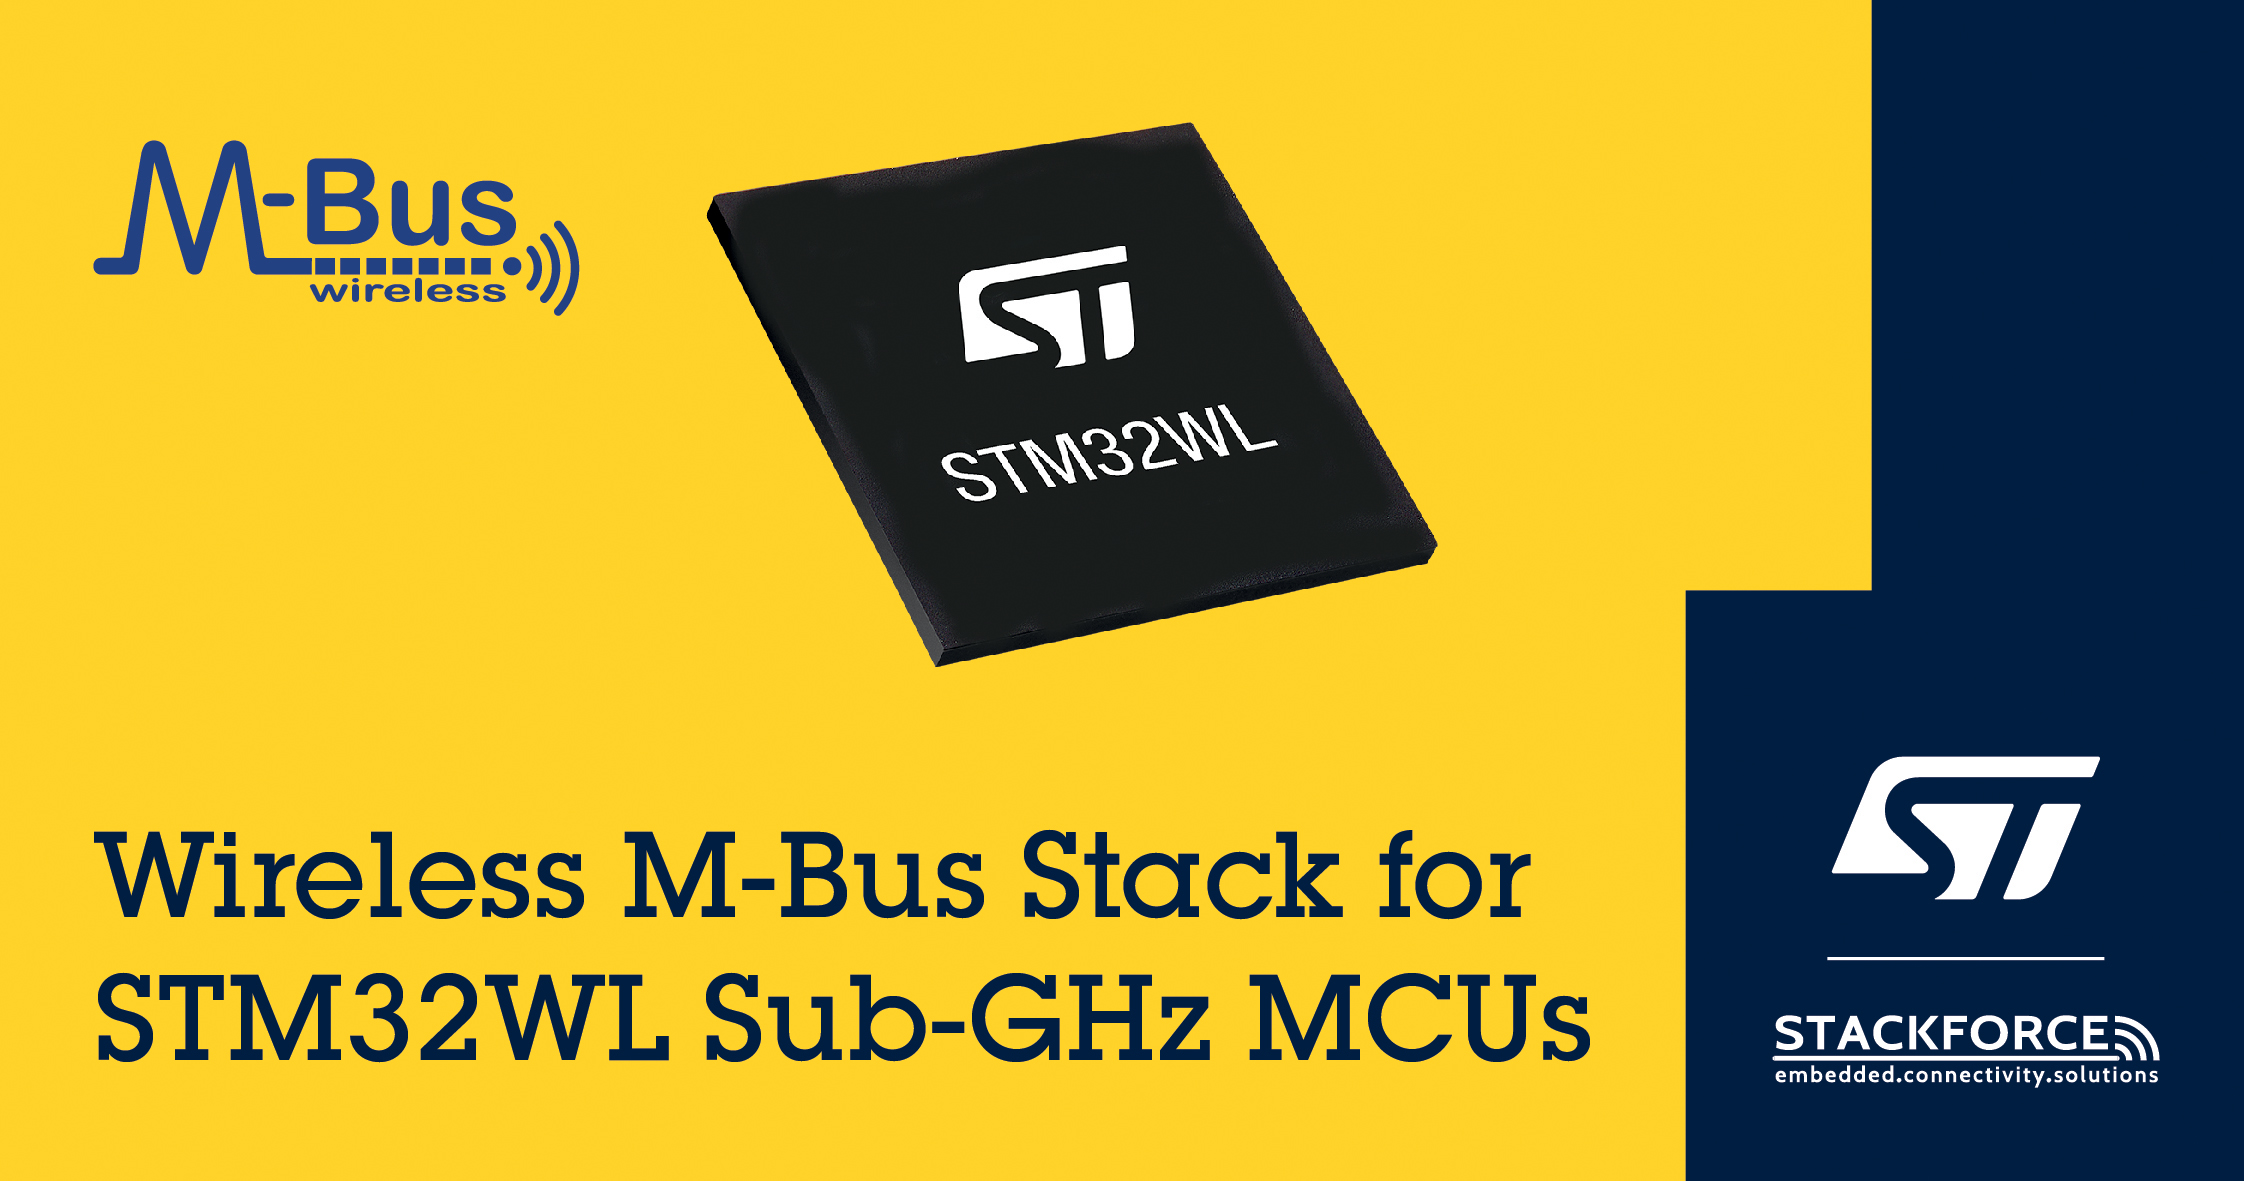 意法半导体引入Stackforce的wM-Bus智能电表总线协议栈，丰富STM32WL无线微控制器生态系统